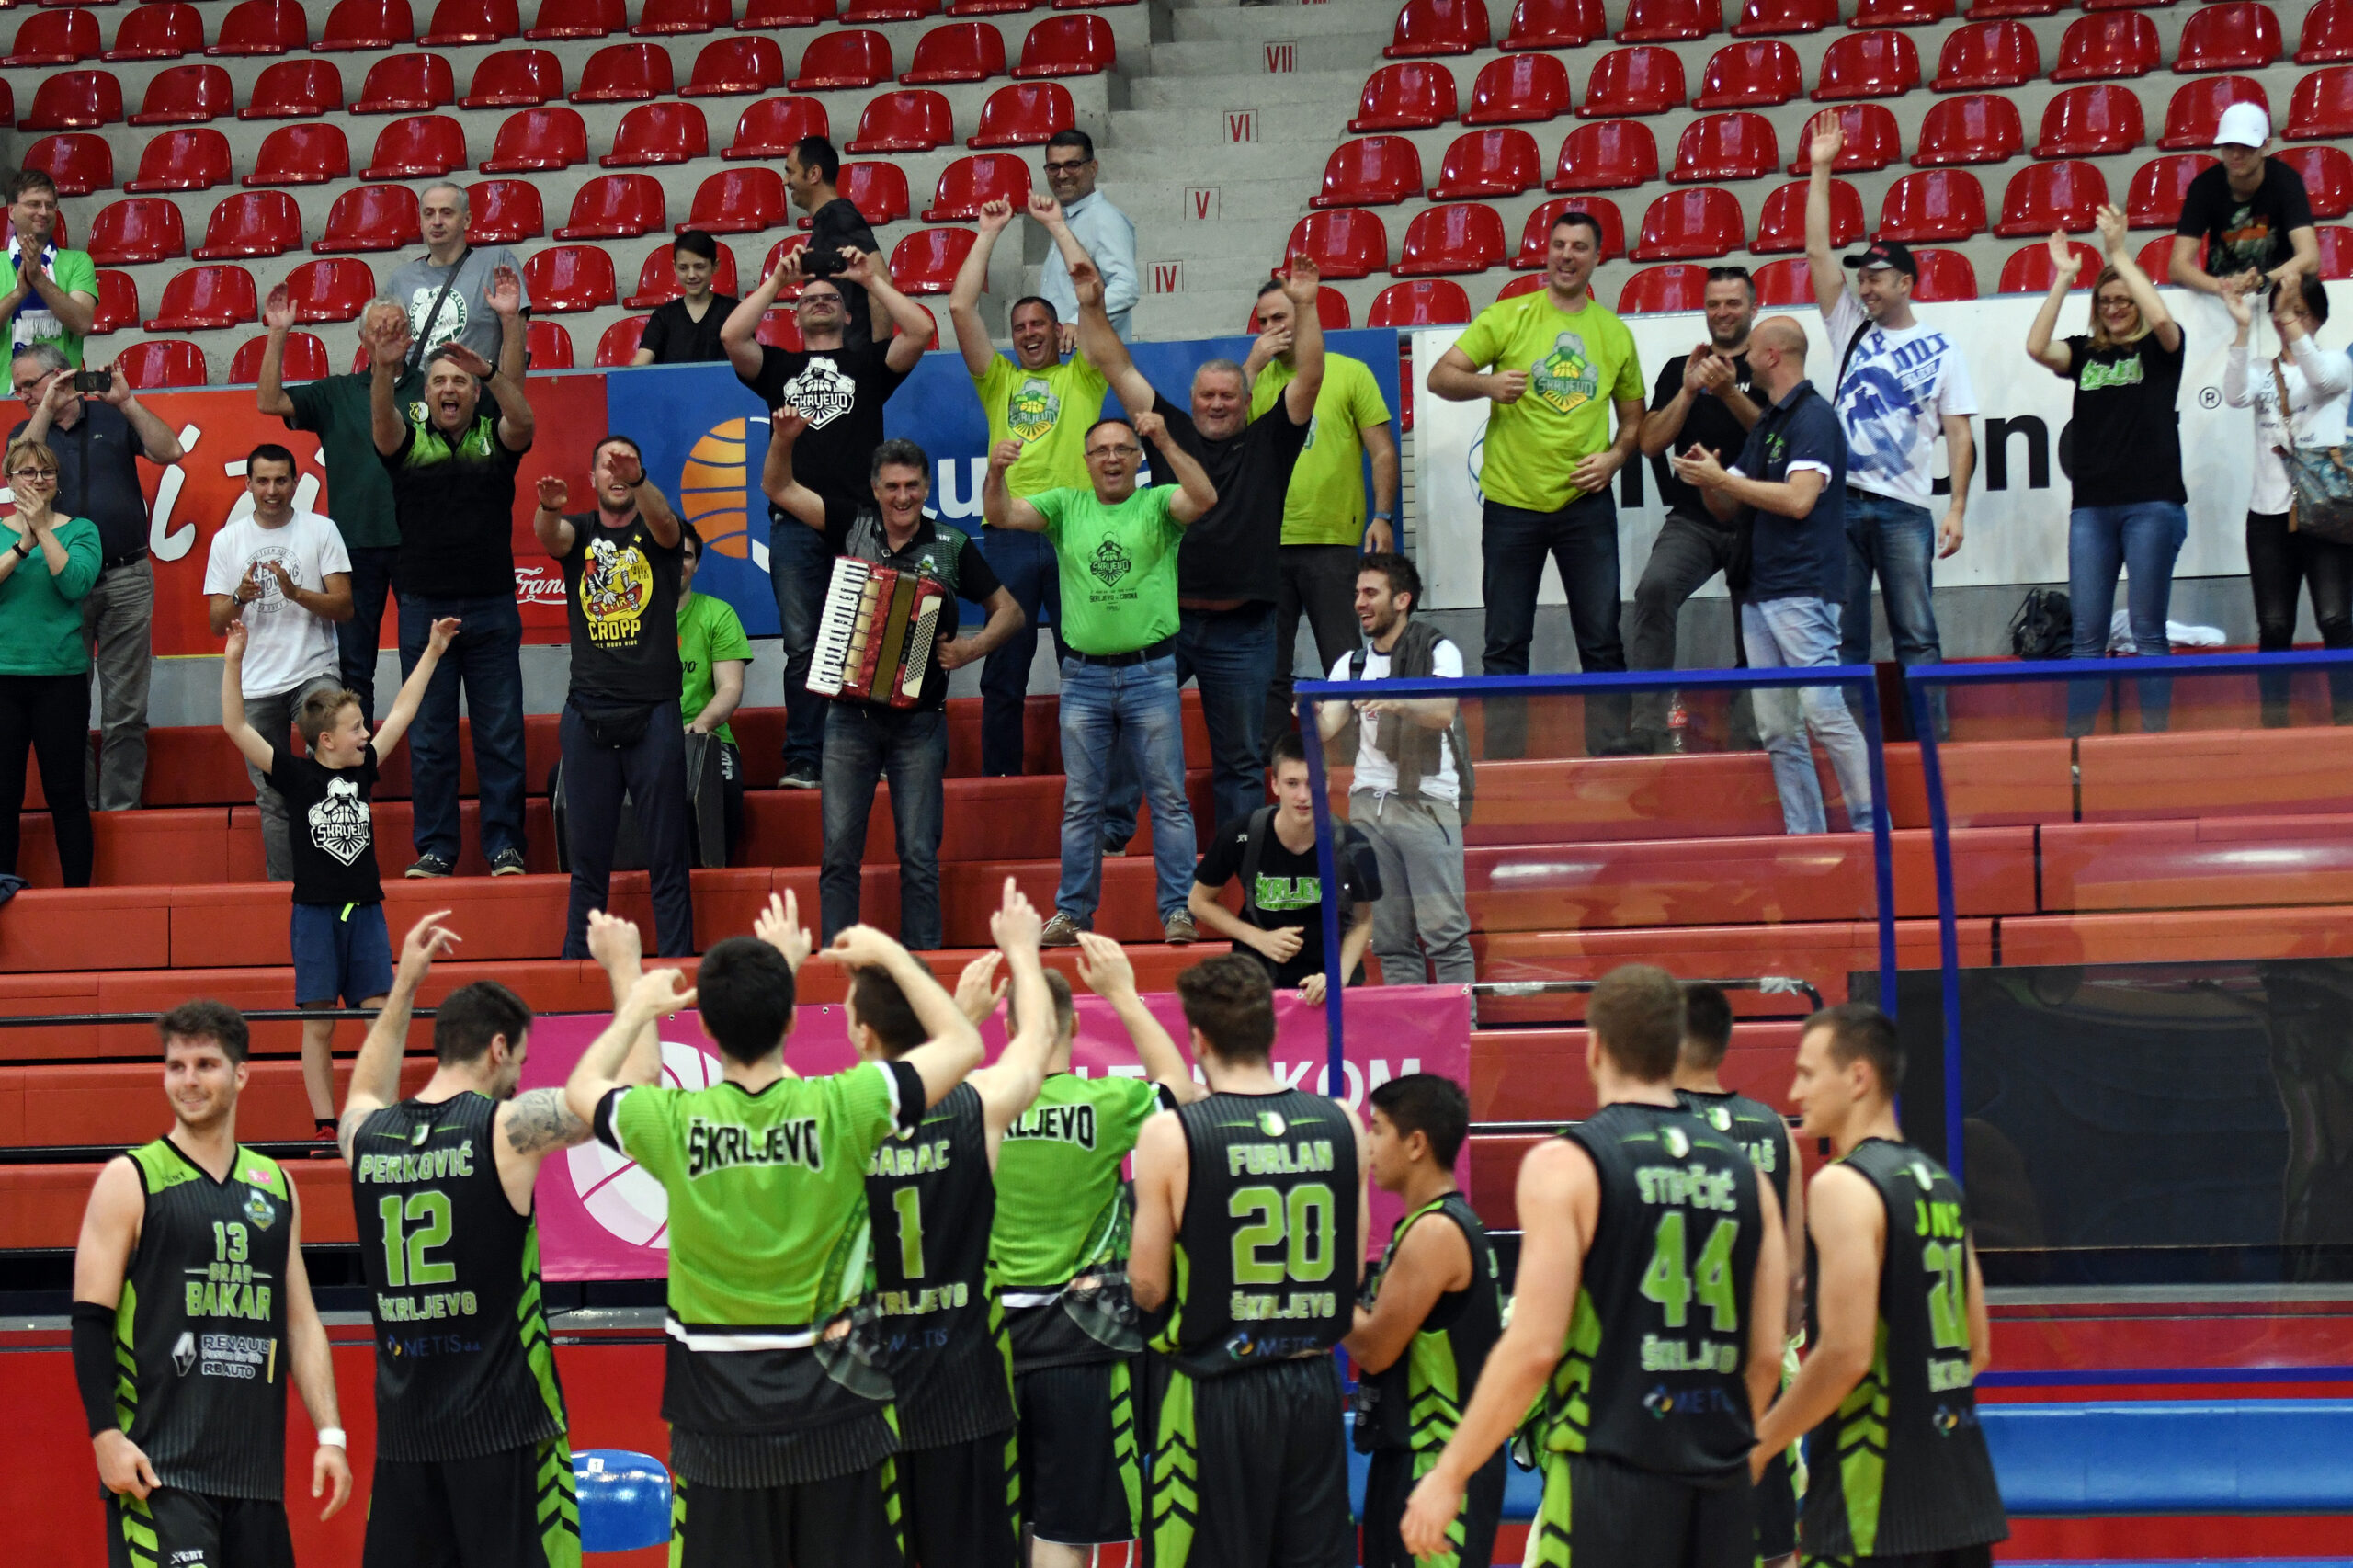 Zeleni s navijačima u Draženovu domu/Foto Arhiva NL